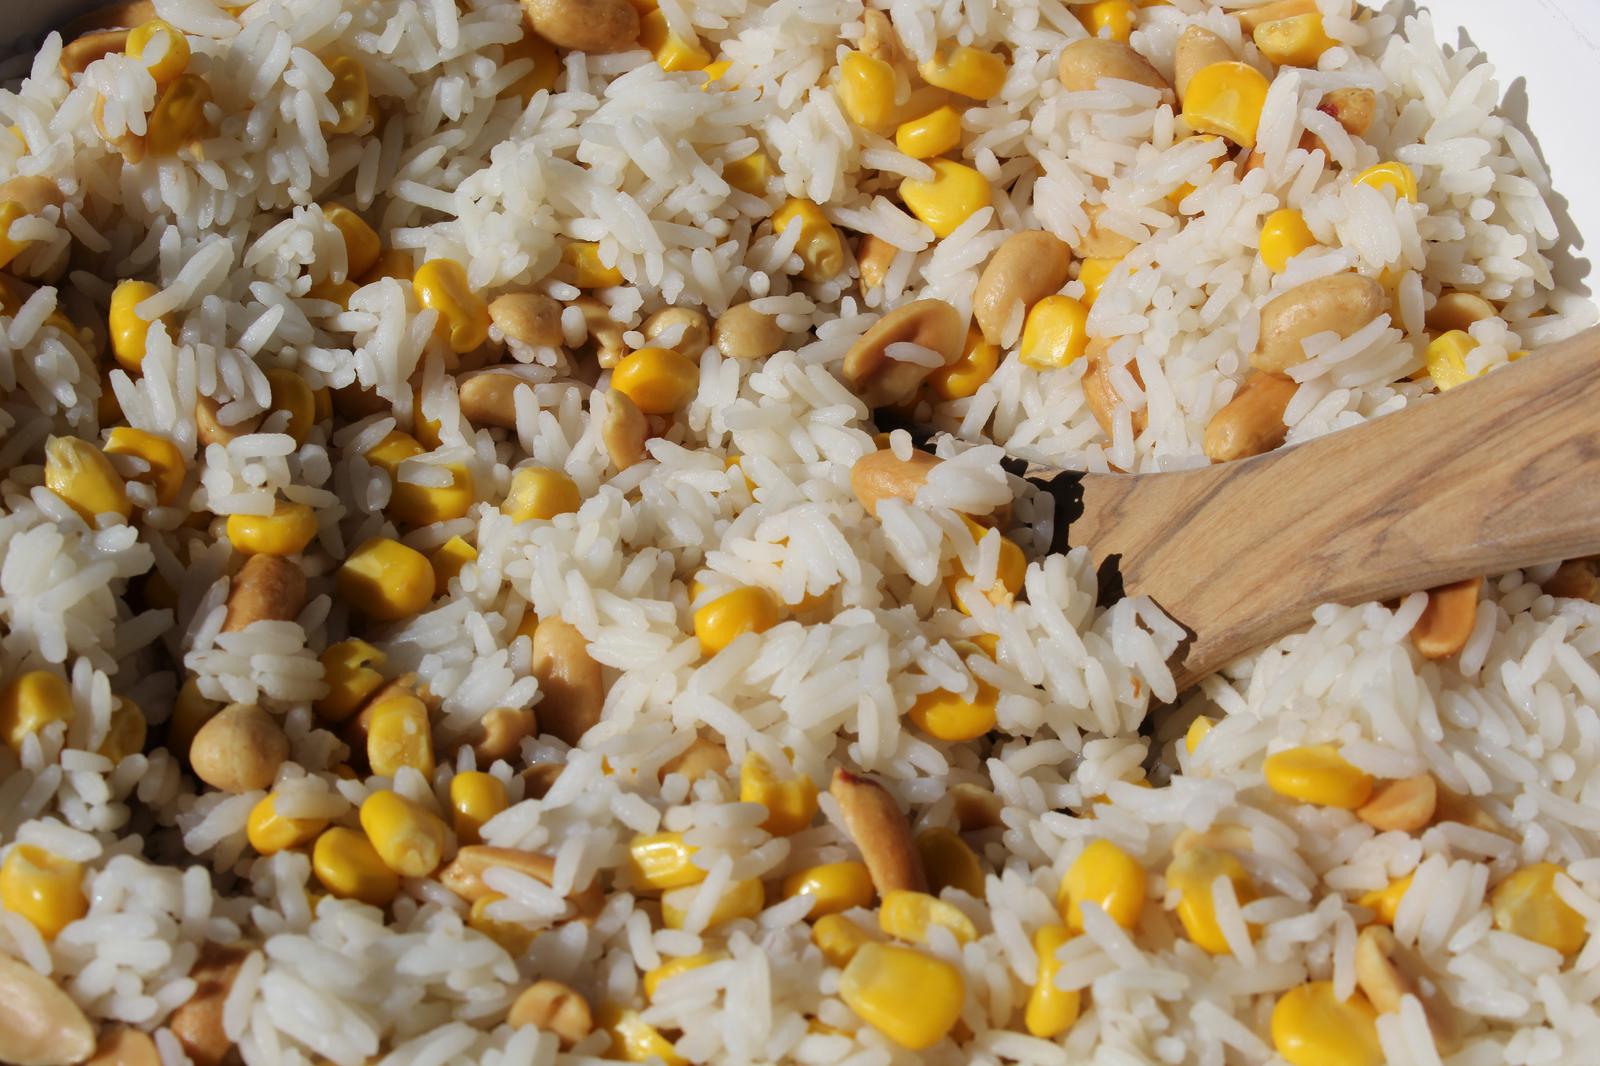 Erdnuss-Mais-Reis|Erdnuß-Mais-Reis|Erdnuß-Mais-Reissalat|Erdnuss-Mais-Reissalat|Beilage|Beilage zum Grillen|Salat|vegan|einfach|schnell|Reis